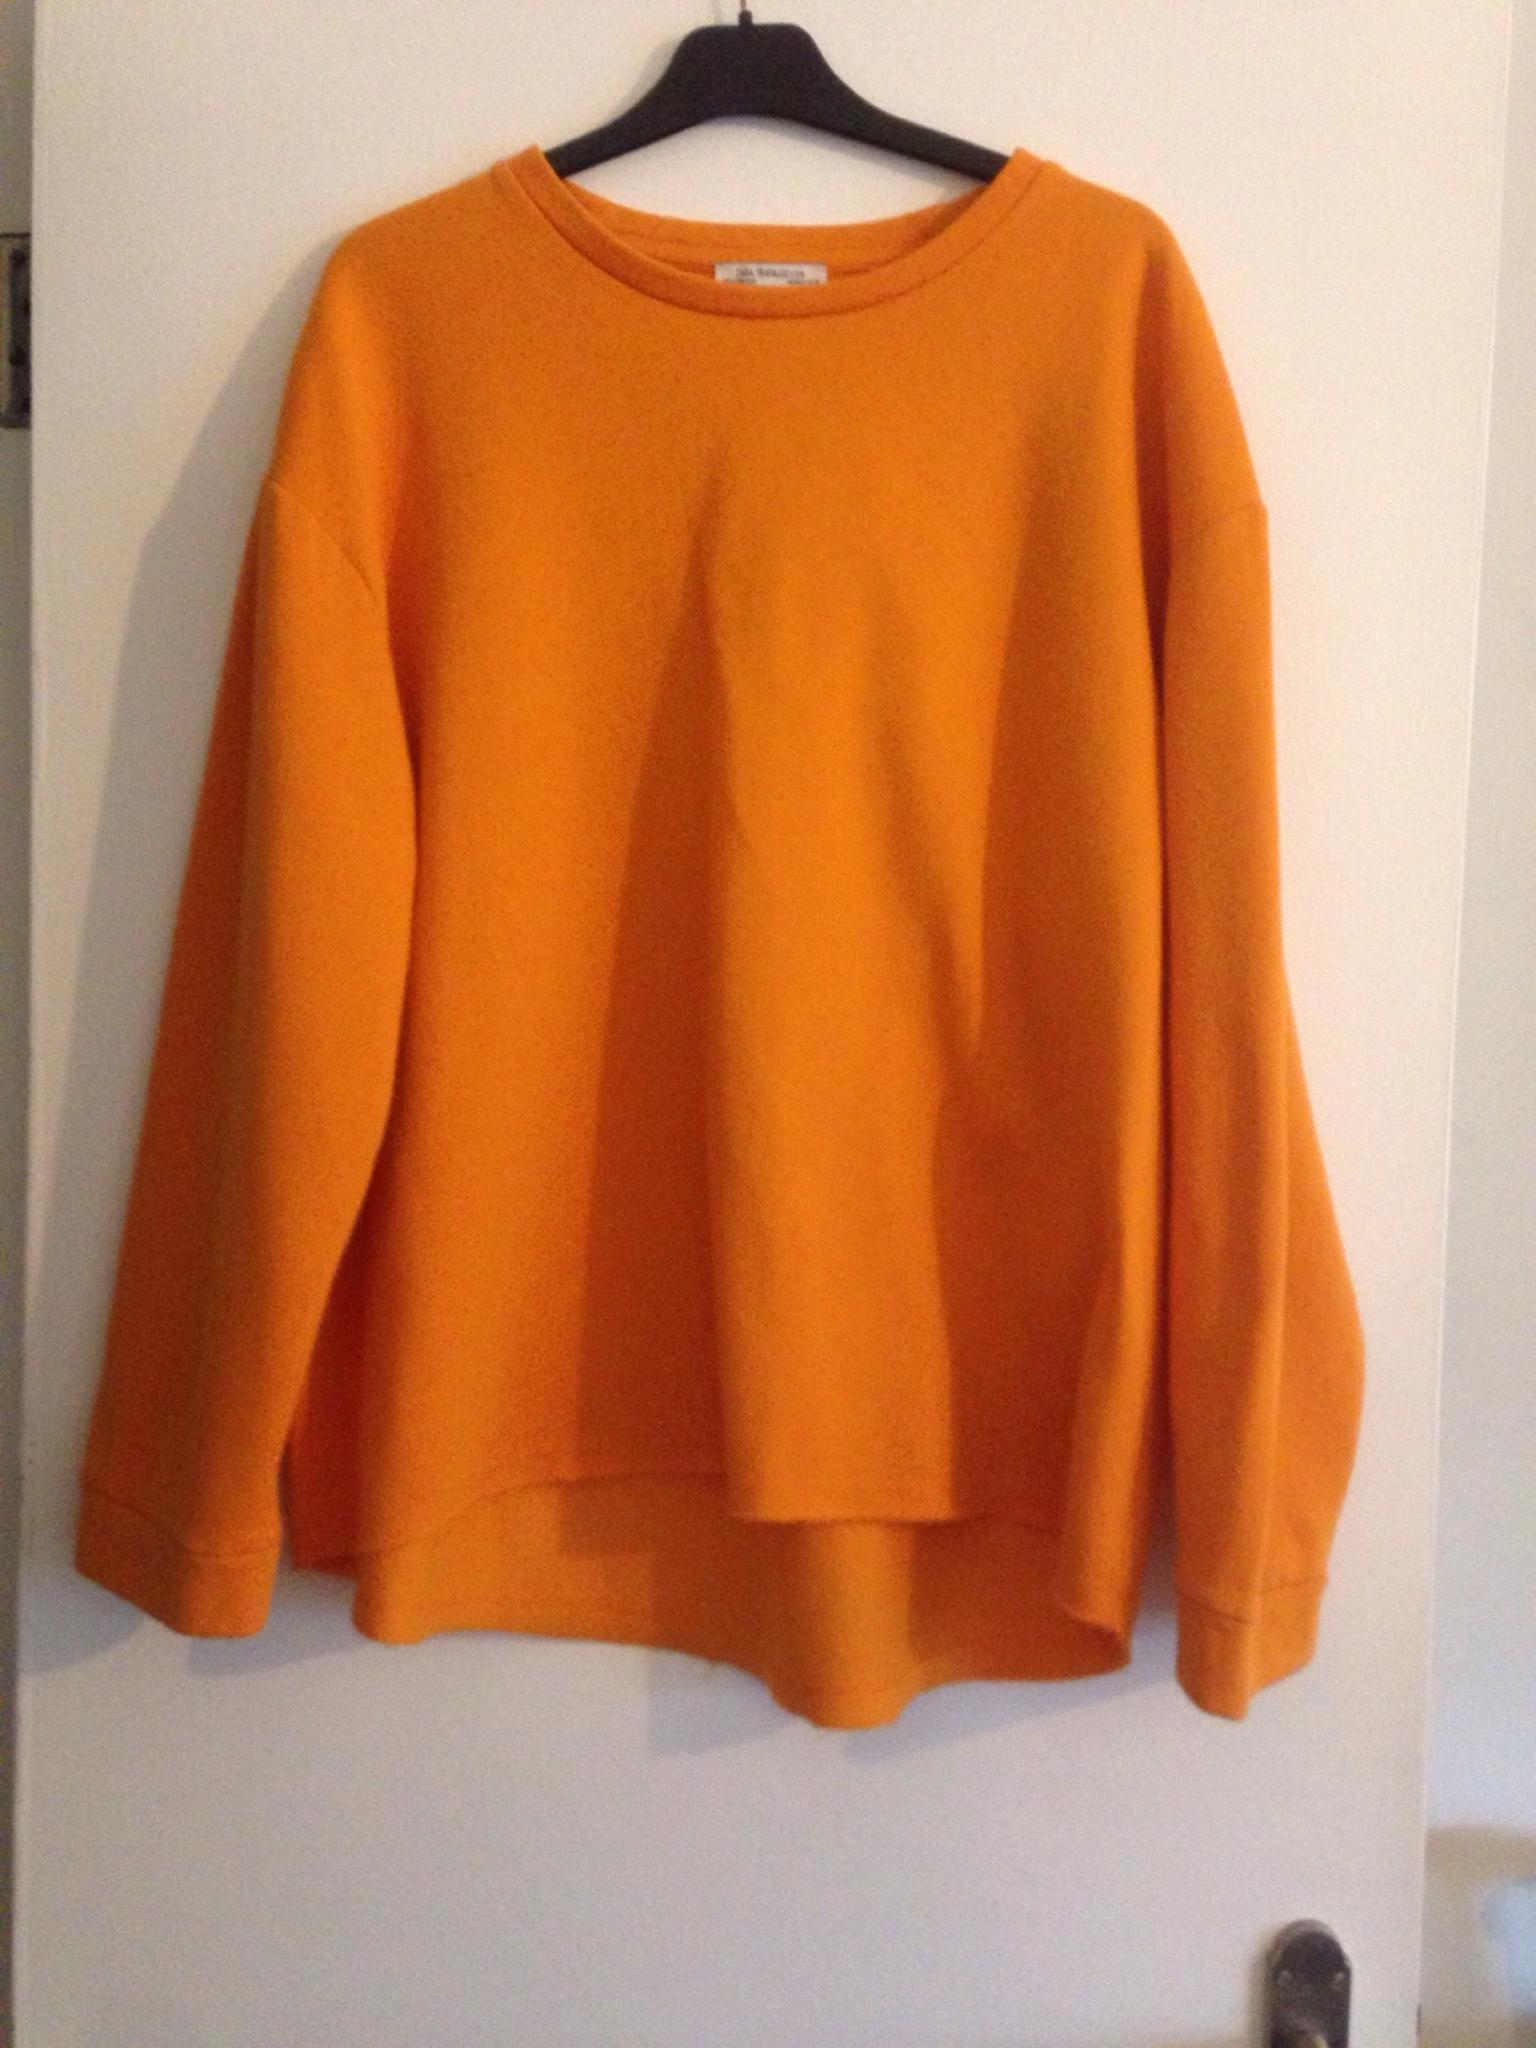 zara orange sweatshirt